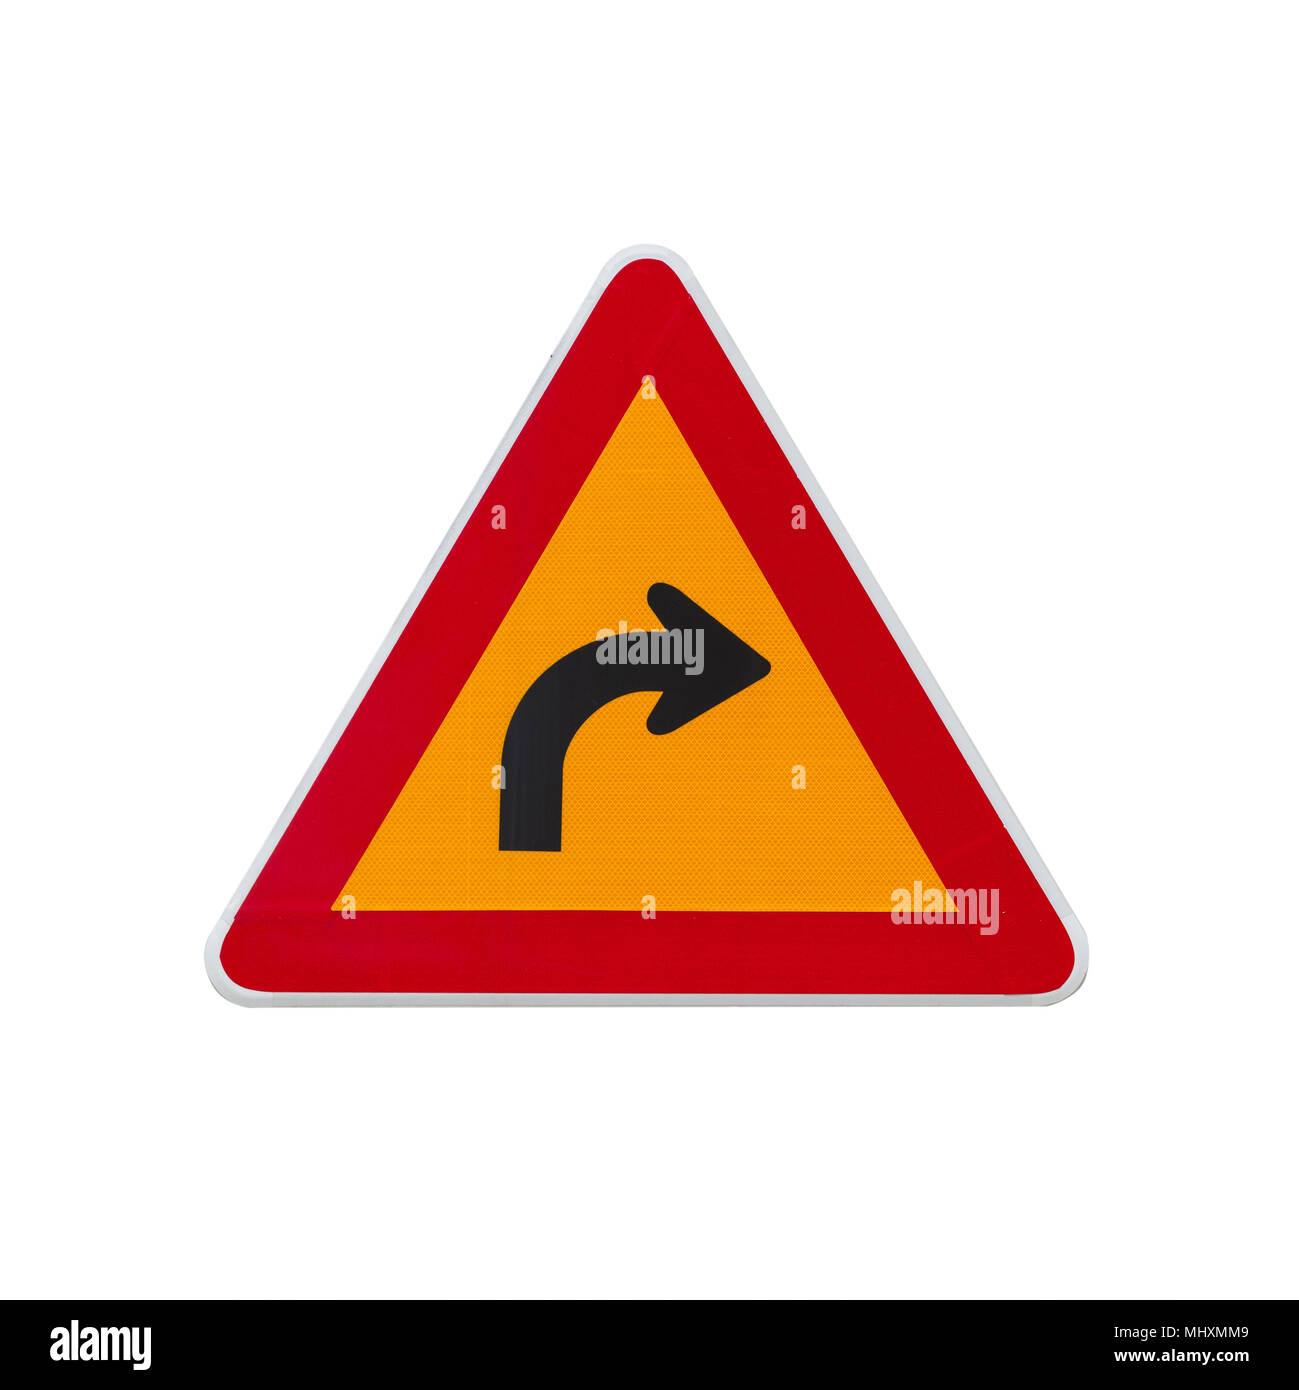 Pericoloso girare a destra, avvertimento cartello stradale isolato su sfondo bianco Foto Stock